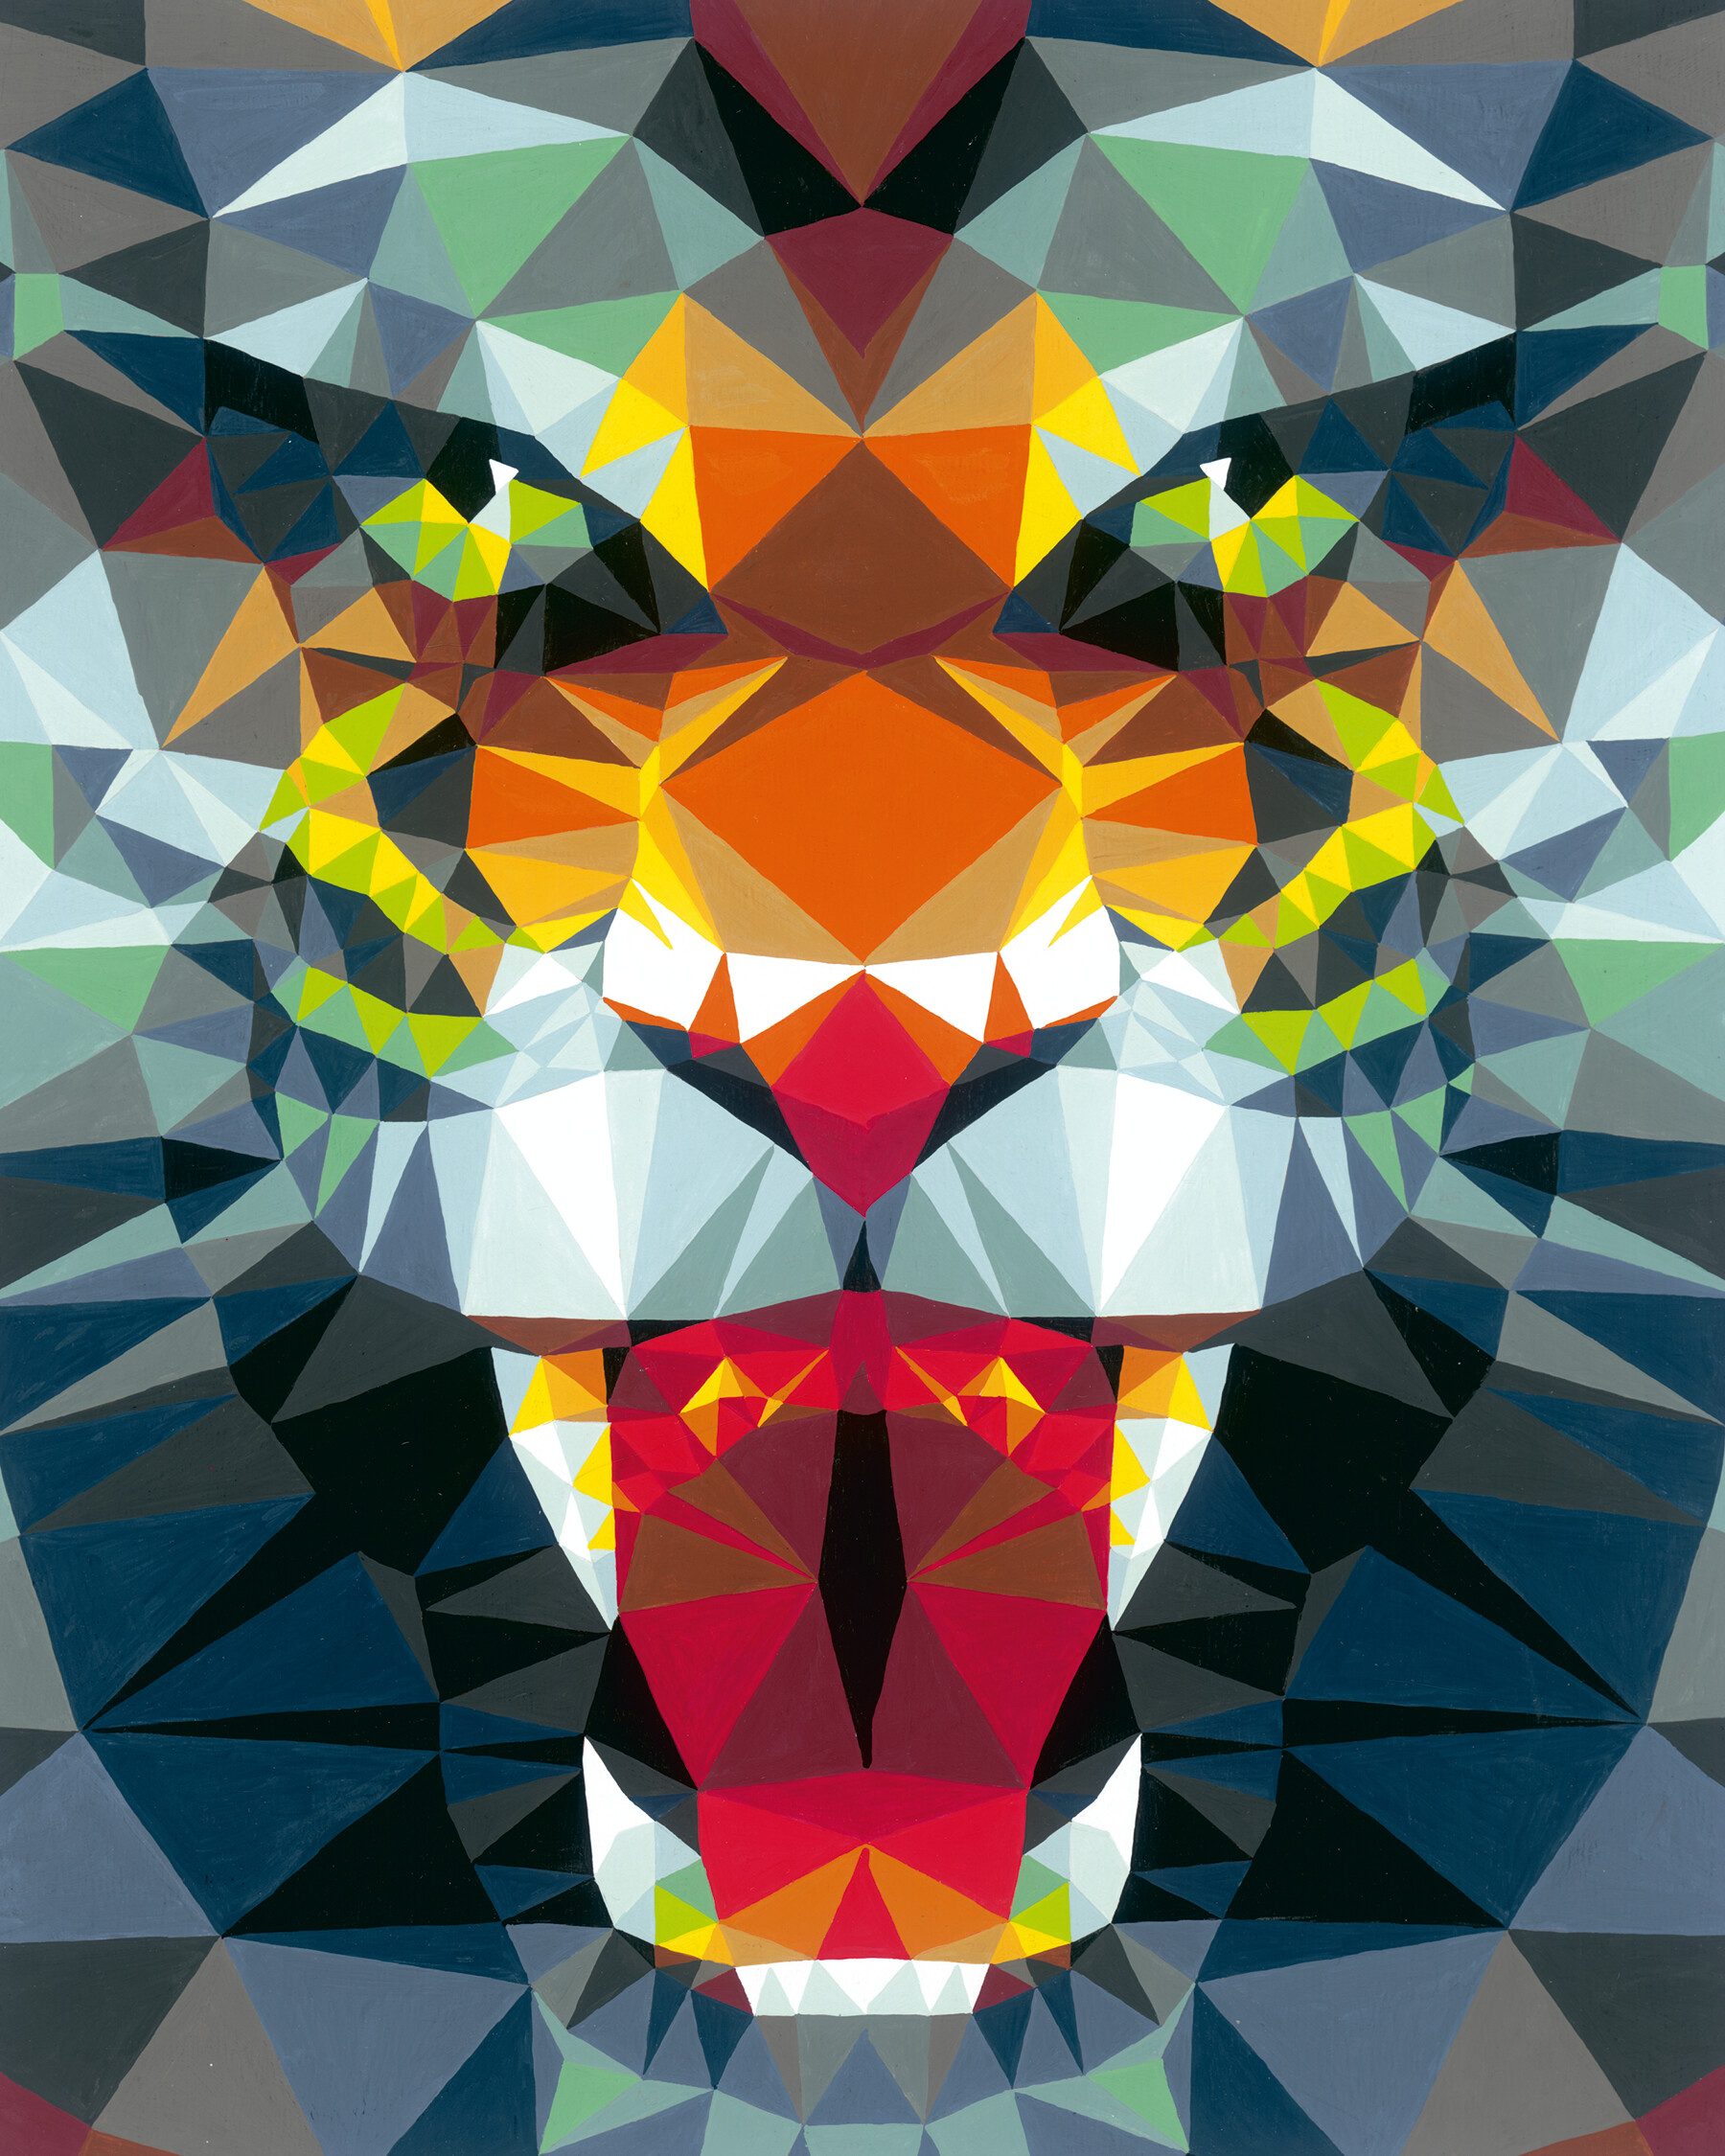 Ravensburger - creart tigre stile poligono, kit per dipingere con i numeri, contiene tavola prestampata 24x30 cm, pennello, colori e accessori, gioco creativo e relax per adulti 14+ anni - CREART